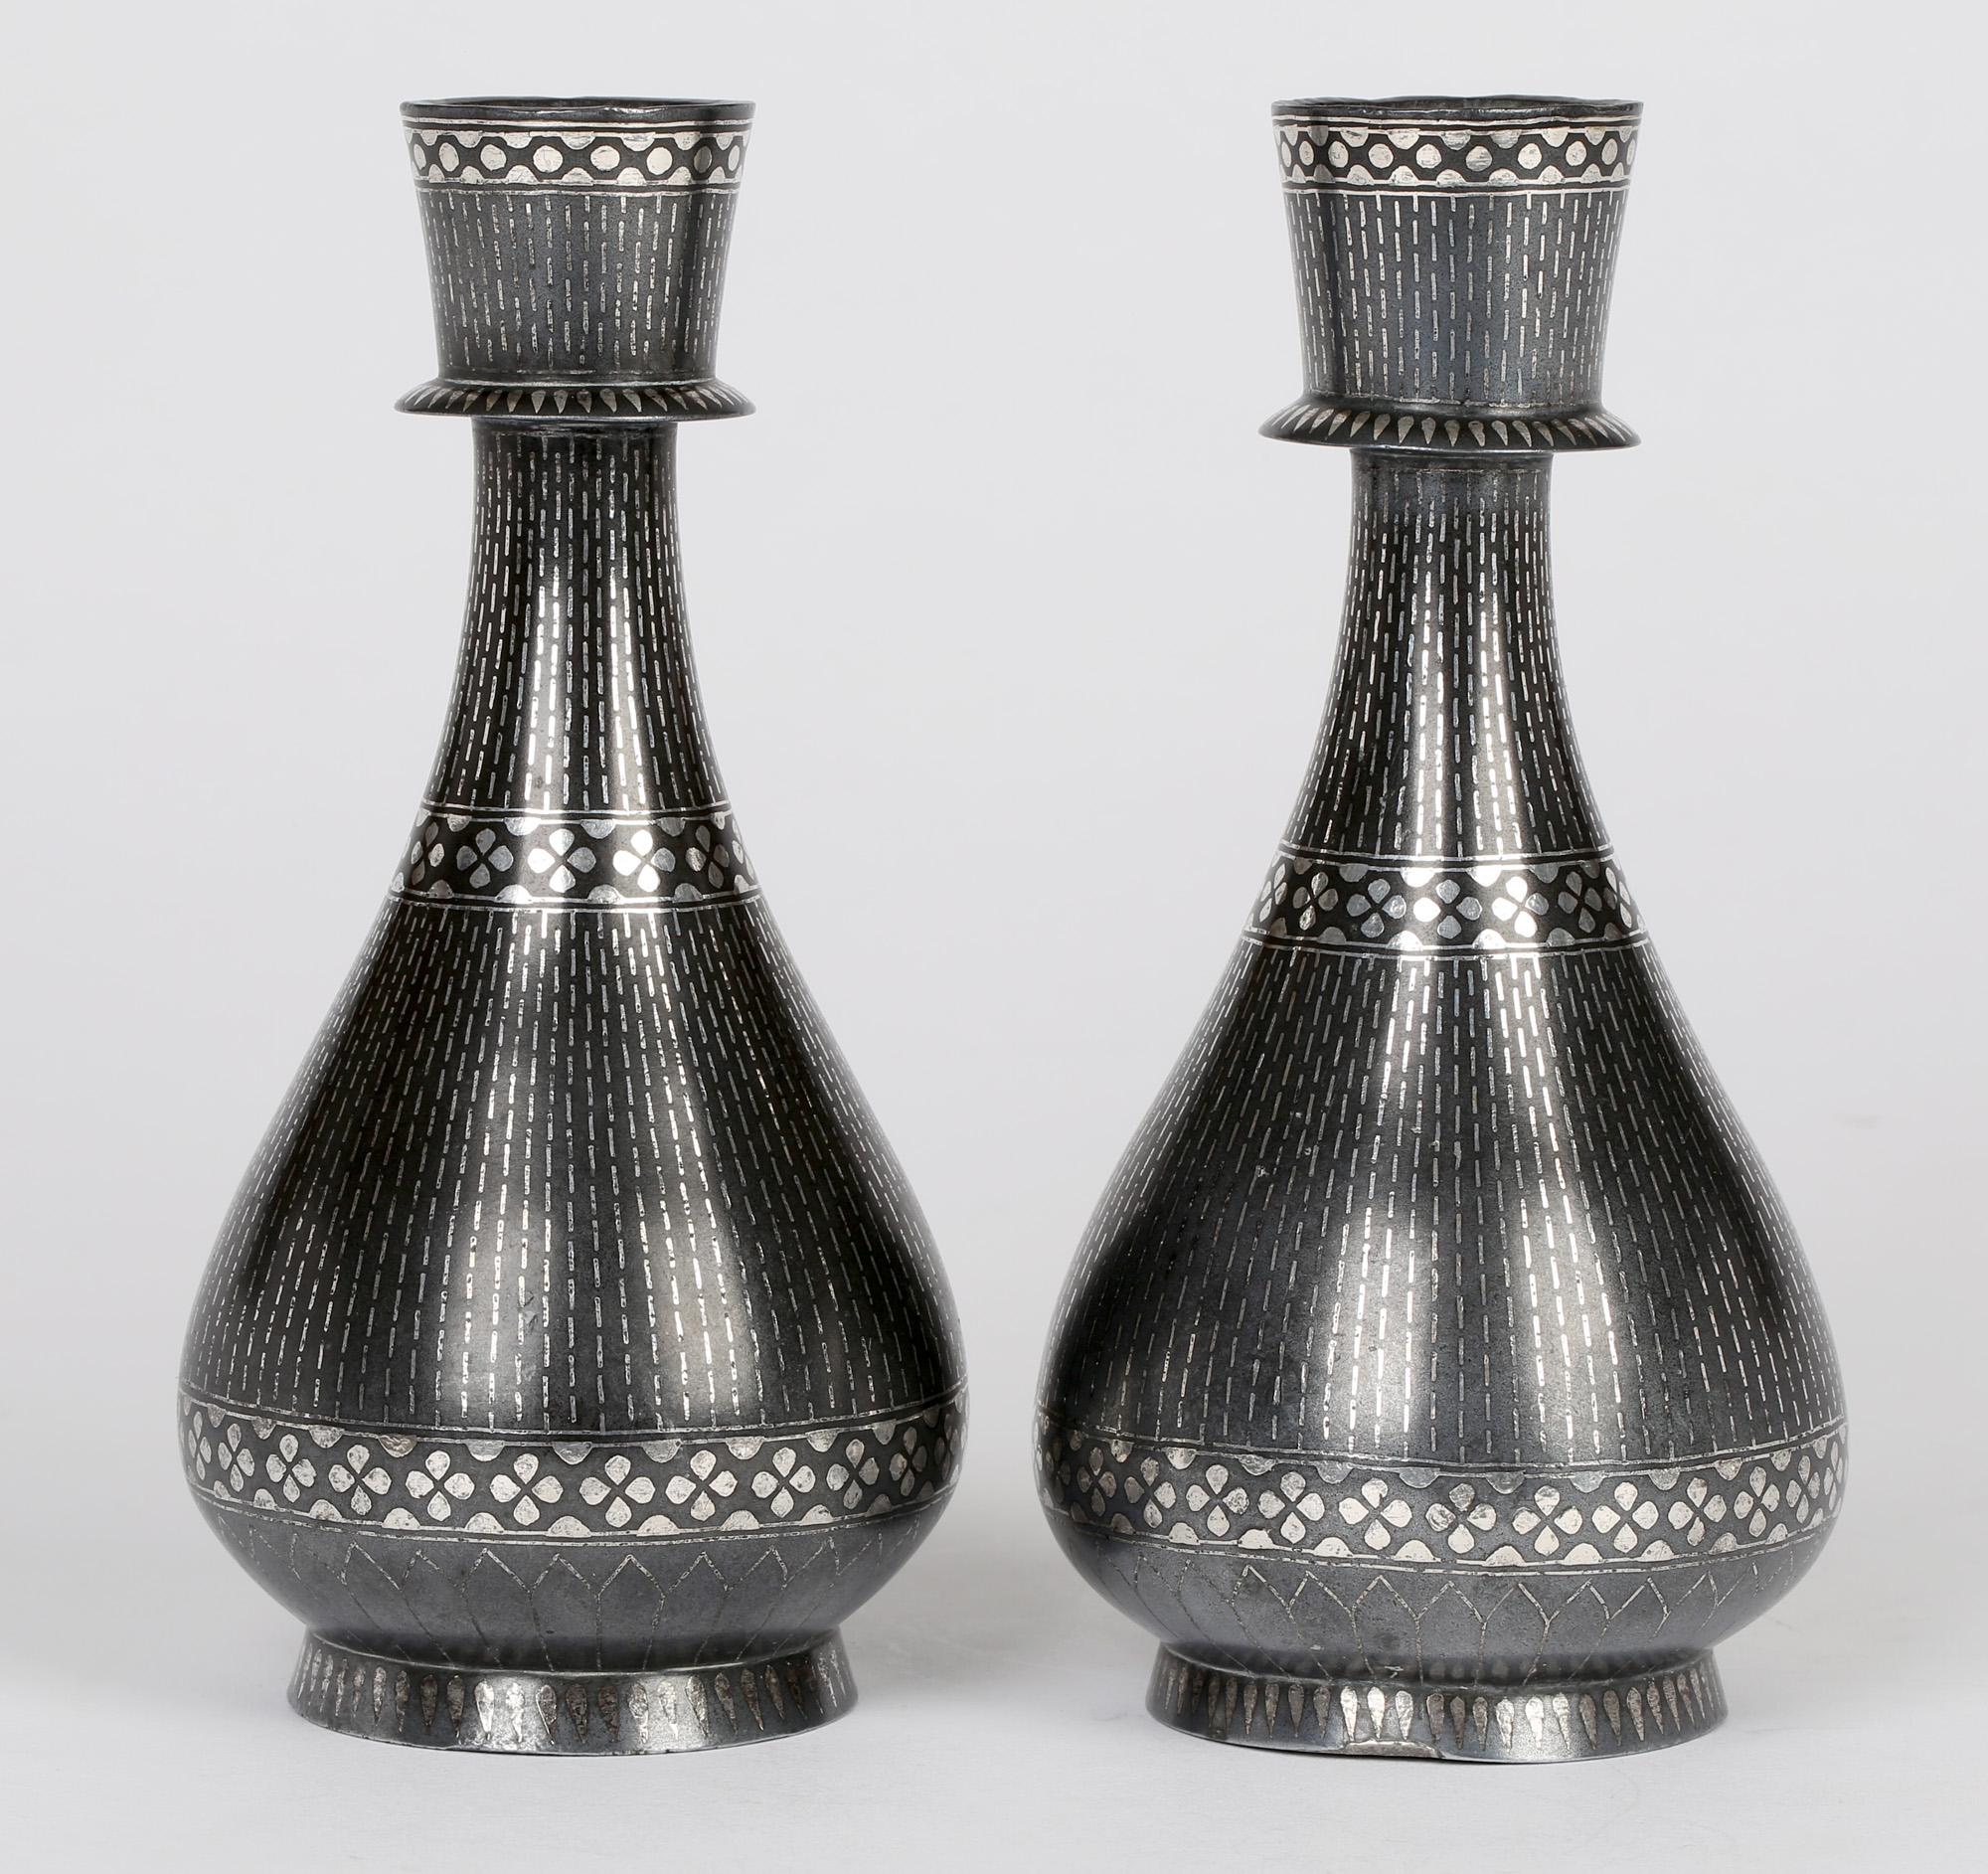 Une très belle paire de vases indiens anciens en terre cuite Bidri, en forme de goutte d'eau avec des motifs linéaires et de pétales floraux en incrustation d'argent, datant probablement de la fin du XIXe siècle. Le corps est en forme de goutte